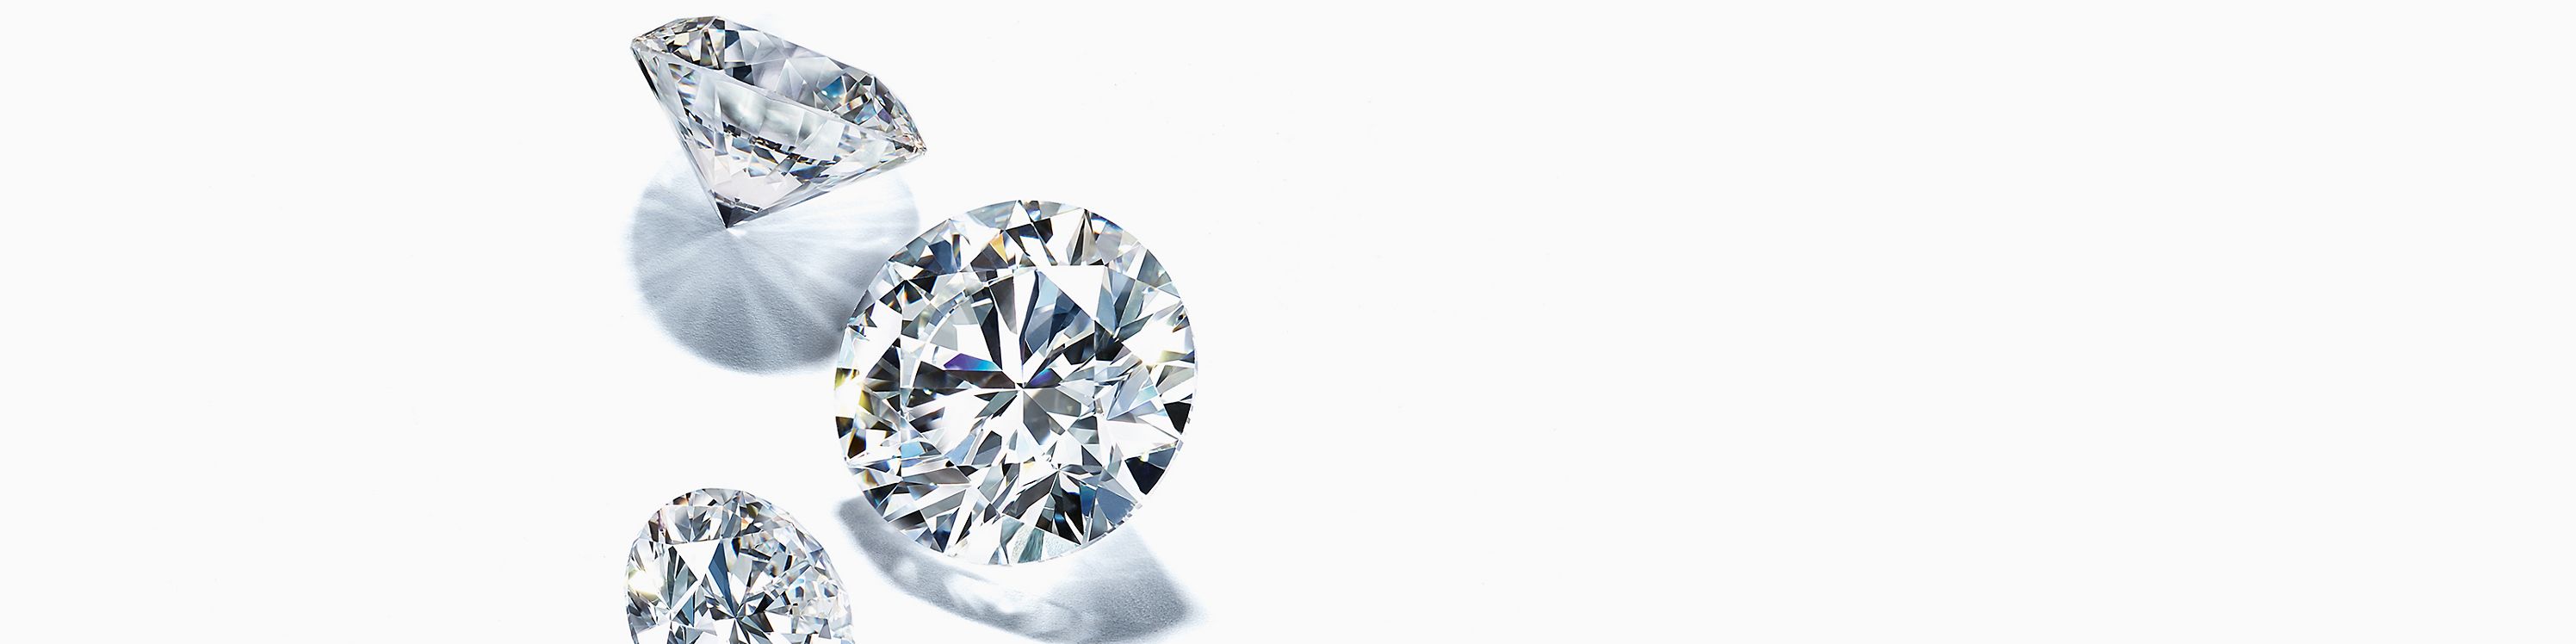 Que désigne la taille du diamant